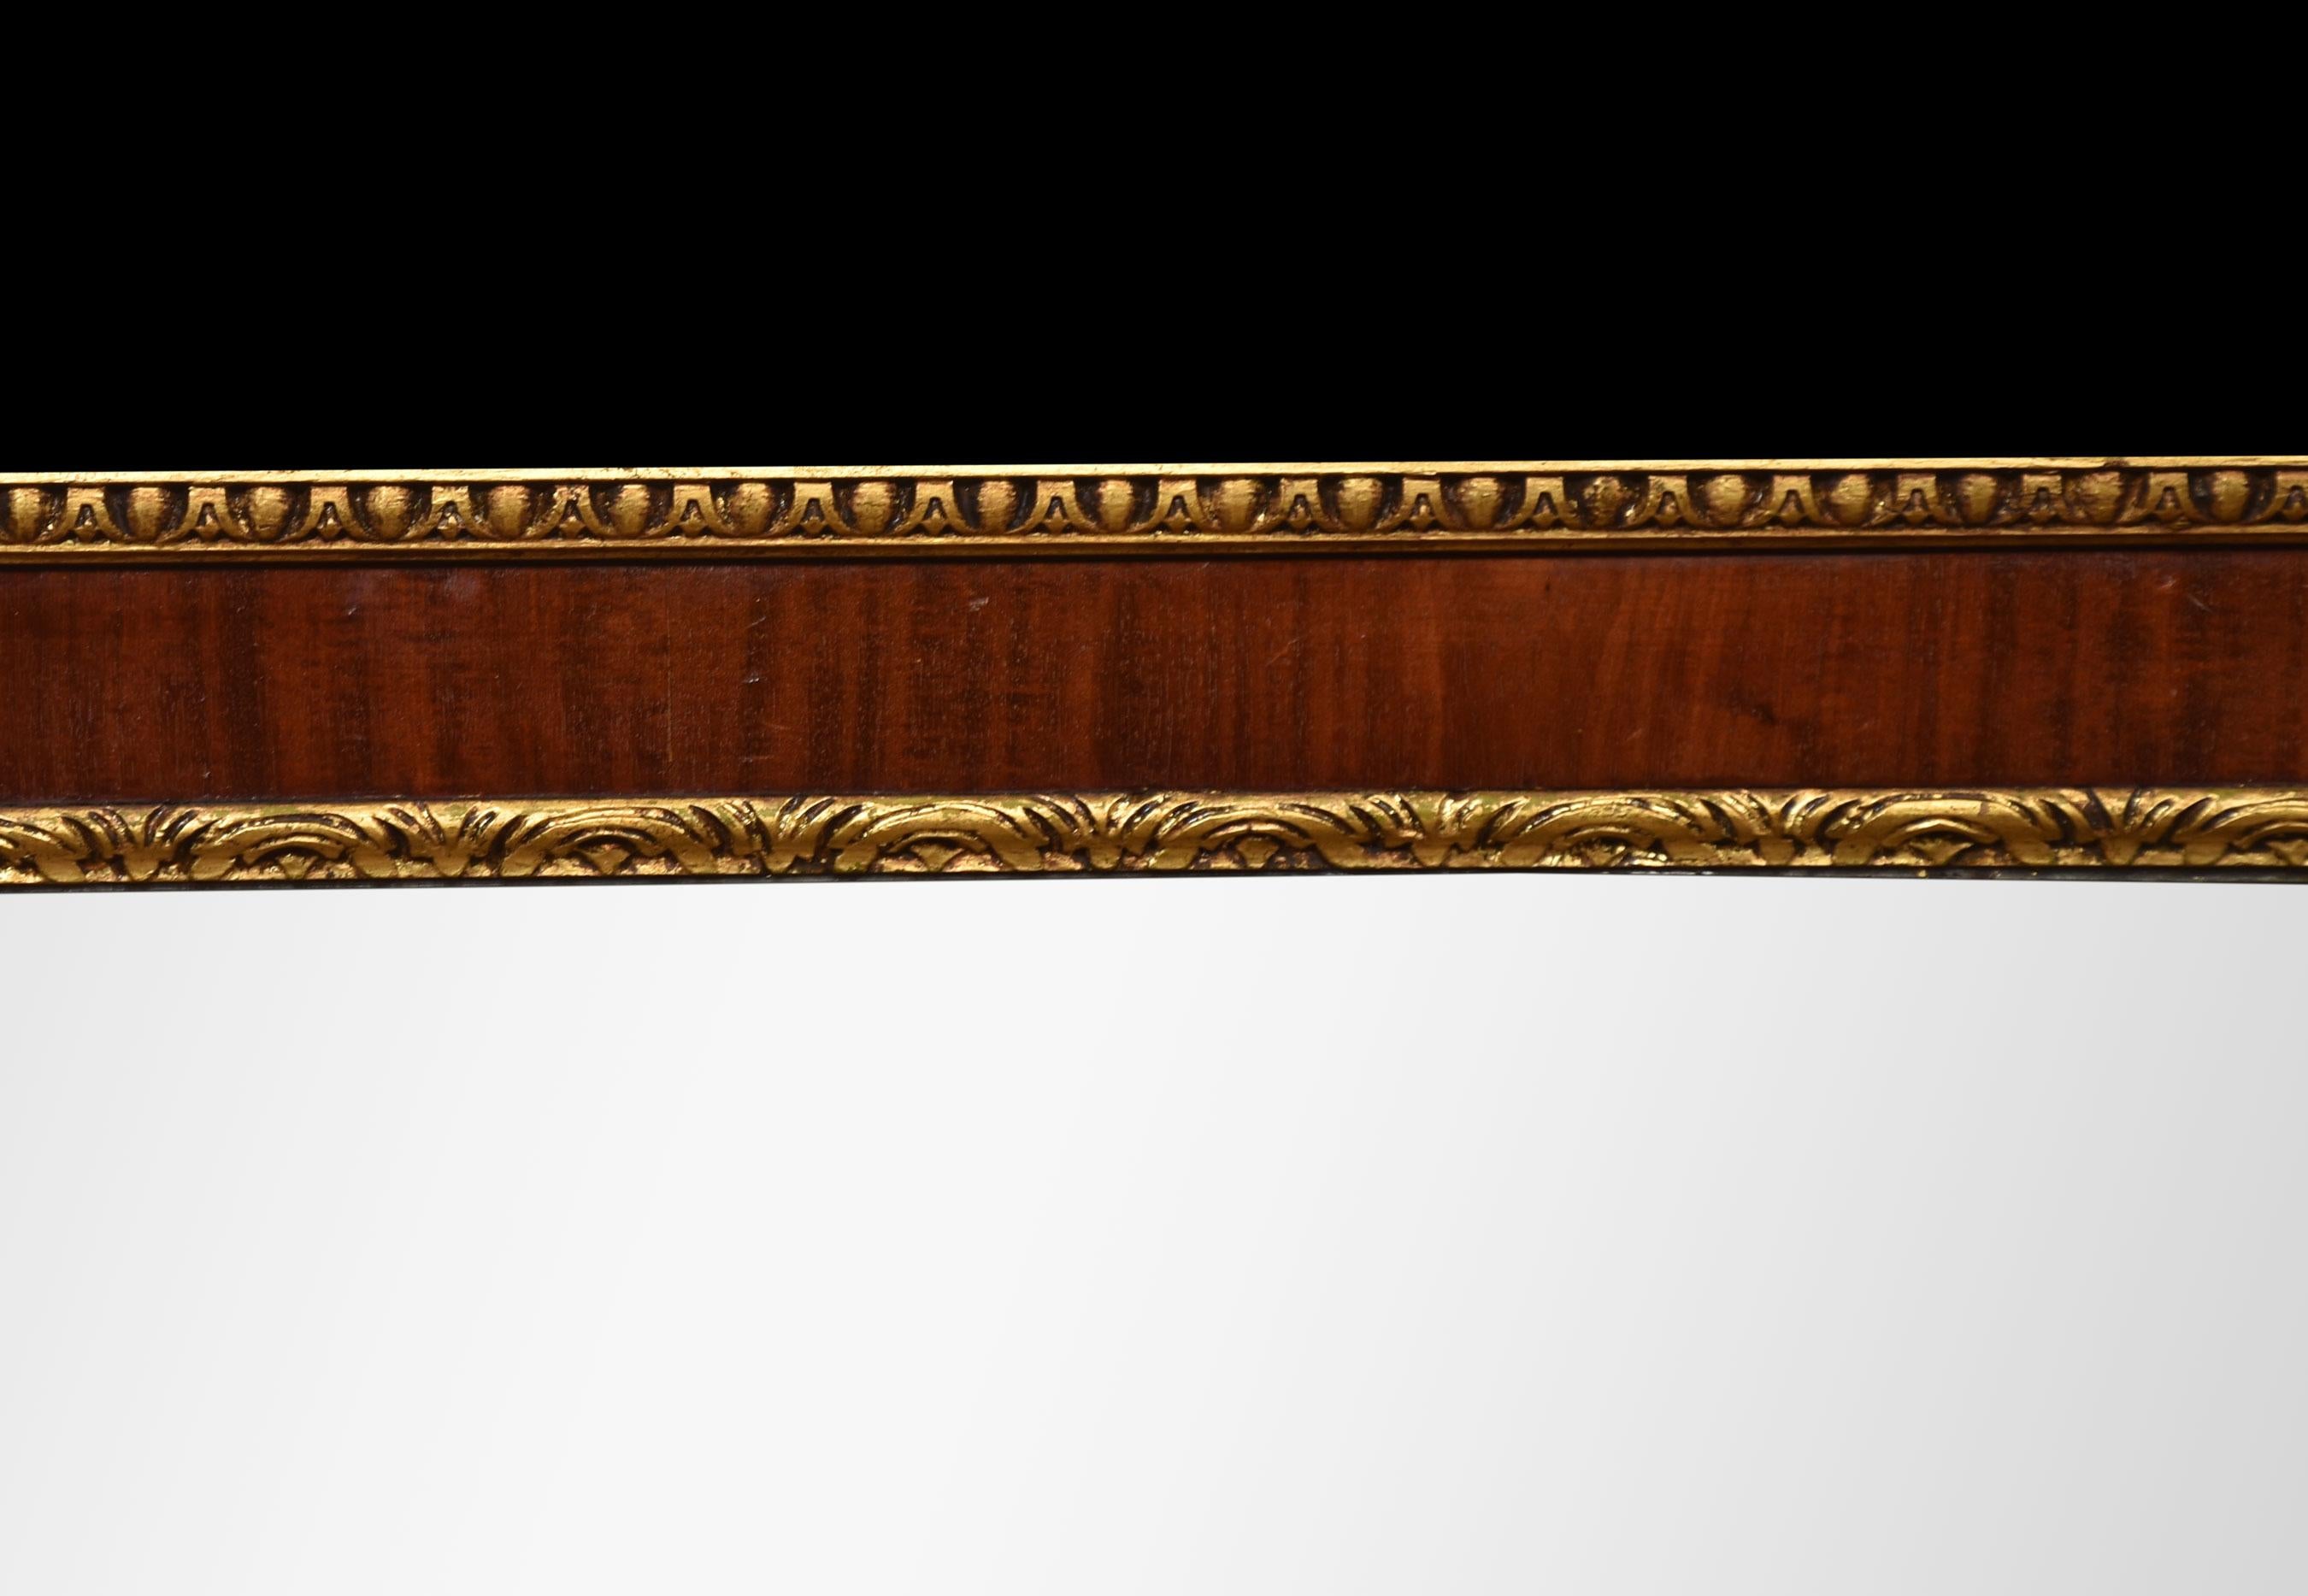 Miroir rectangulaire à trois plaques en acajou doré du XIXe siècle. Le cadre est bordé d'une moulure en forme d'œuf et de fléchette, les plaques de miroir sont encadrées de bordures de feuillage stylisé, chaque angle est orné d'une fleur, les côtés